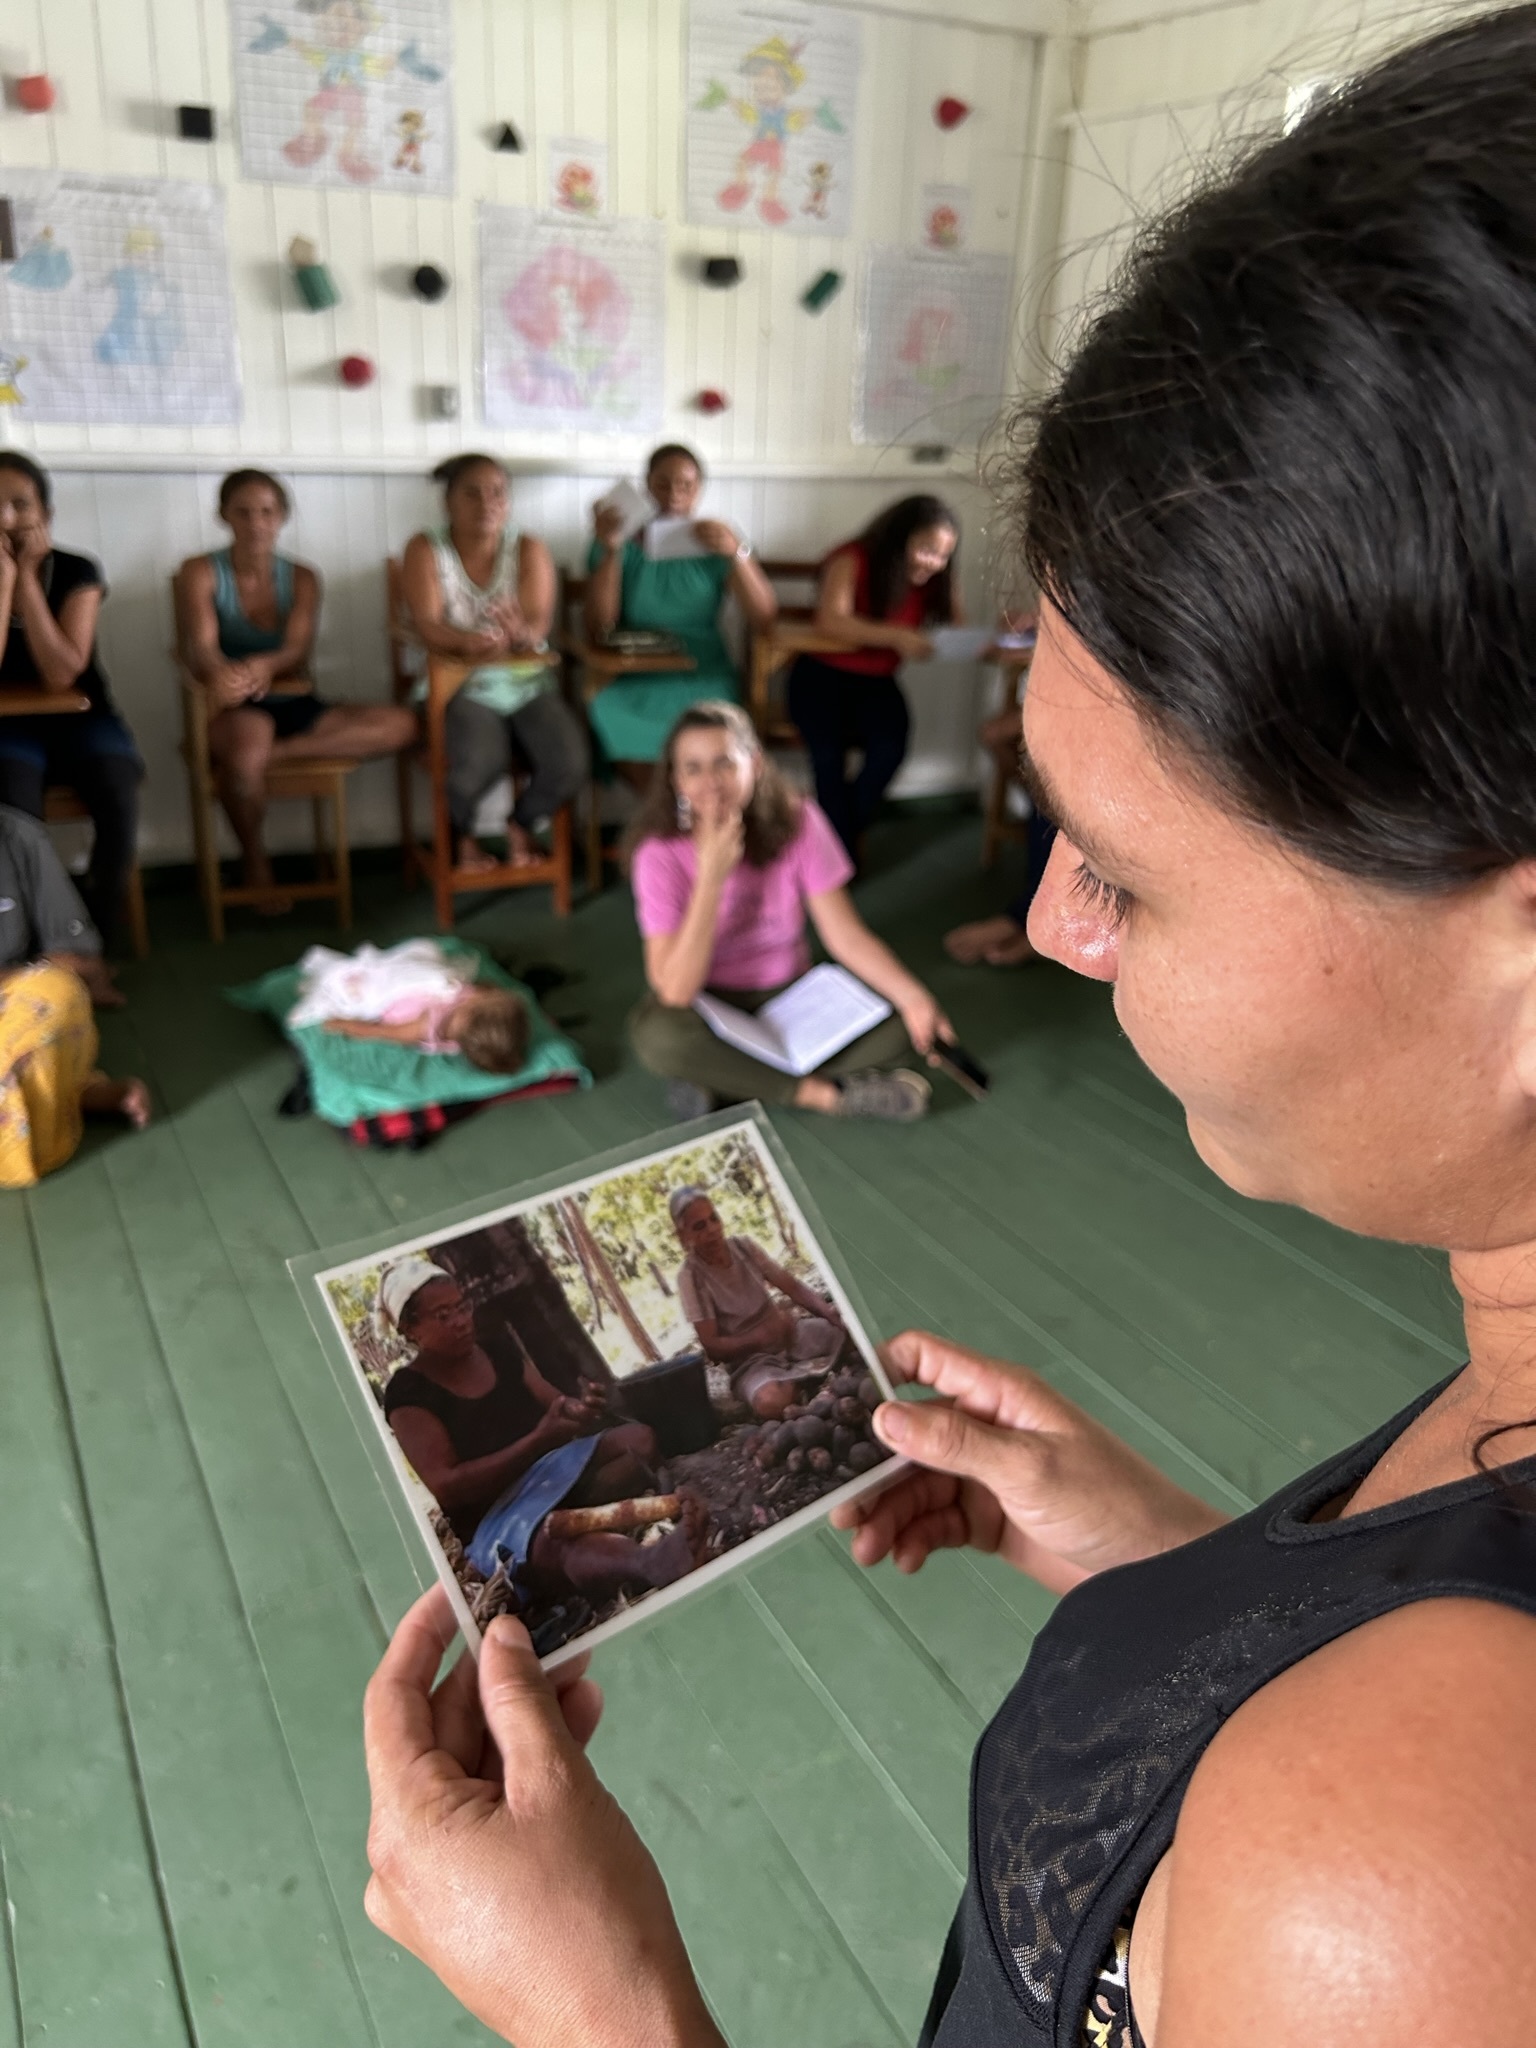 Mulheres seringueiras lutam por direitos no Acre: 'Ajudantes são os